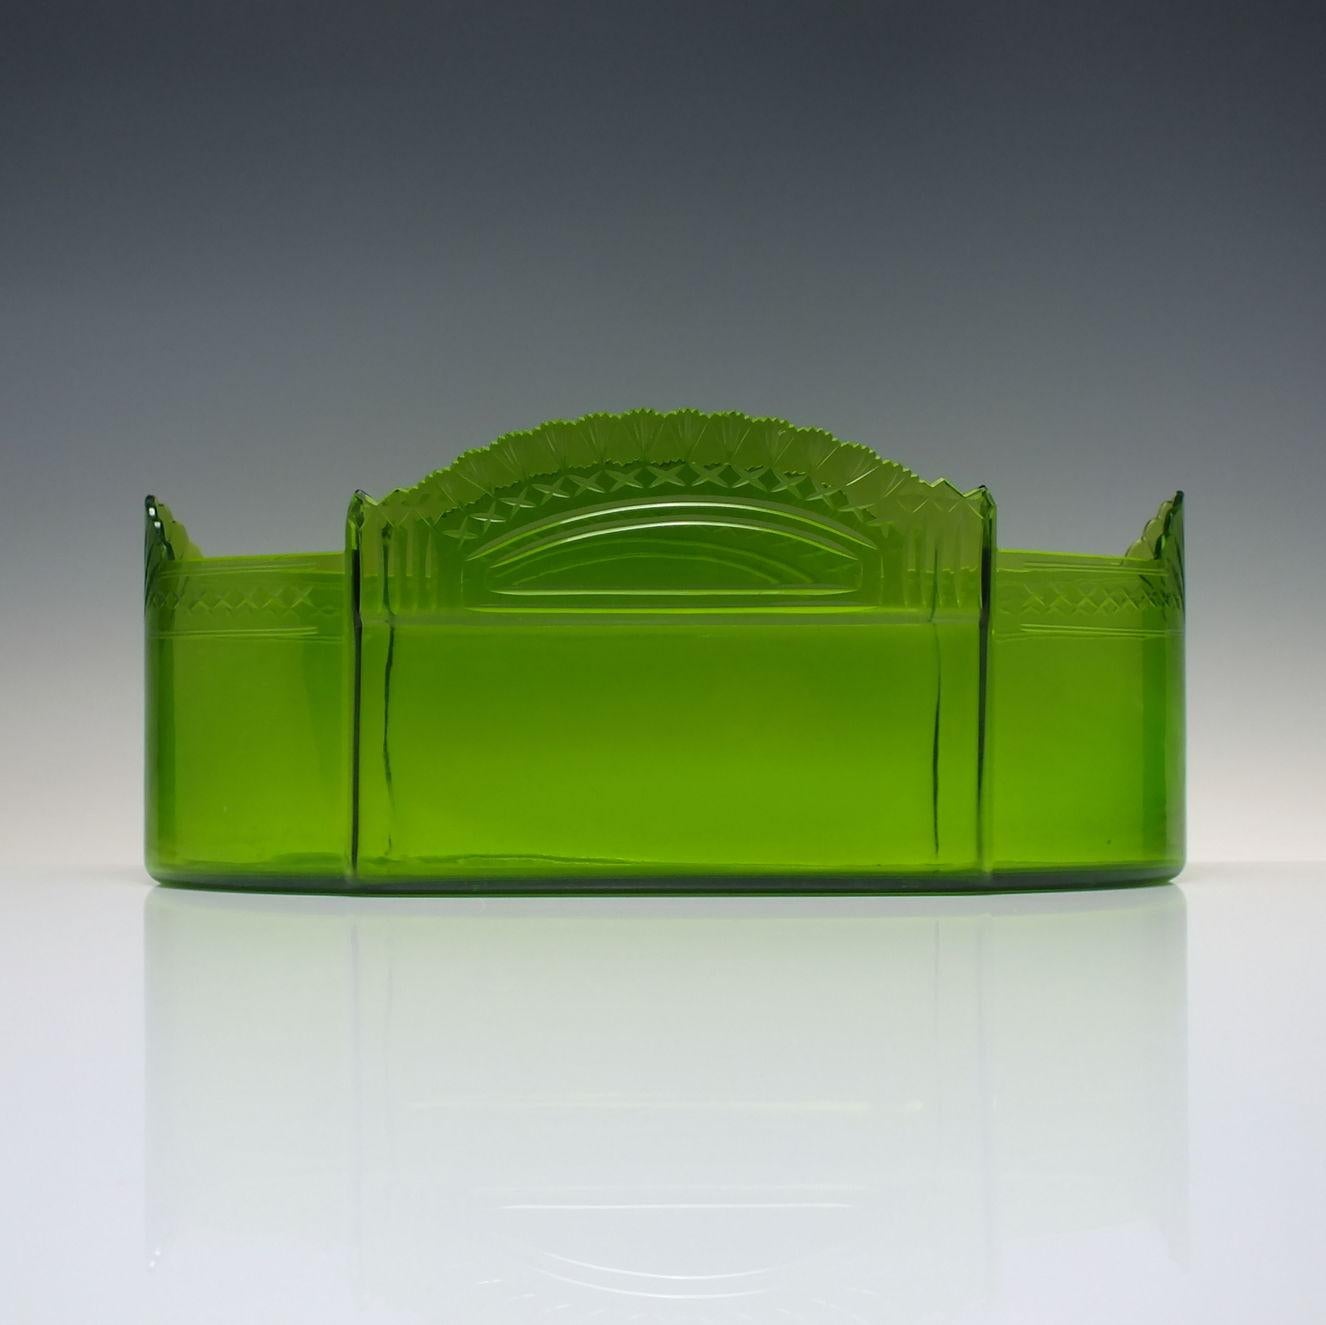 Large Arts & Crafts Jugendstil Pewter Centrepiece with Green Glass Liner c1900 For Sale 3